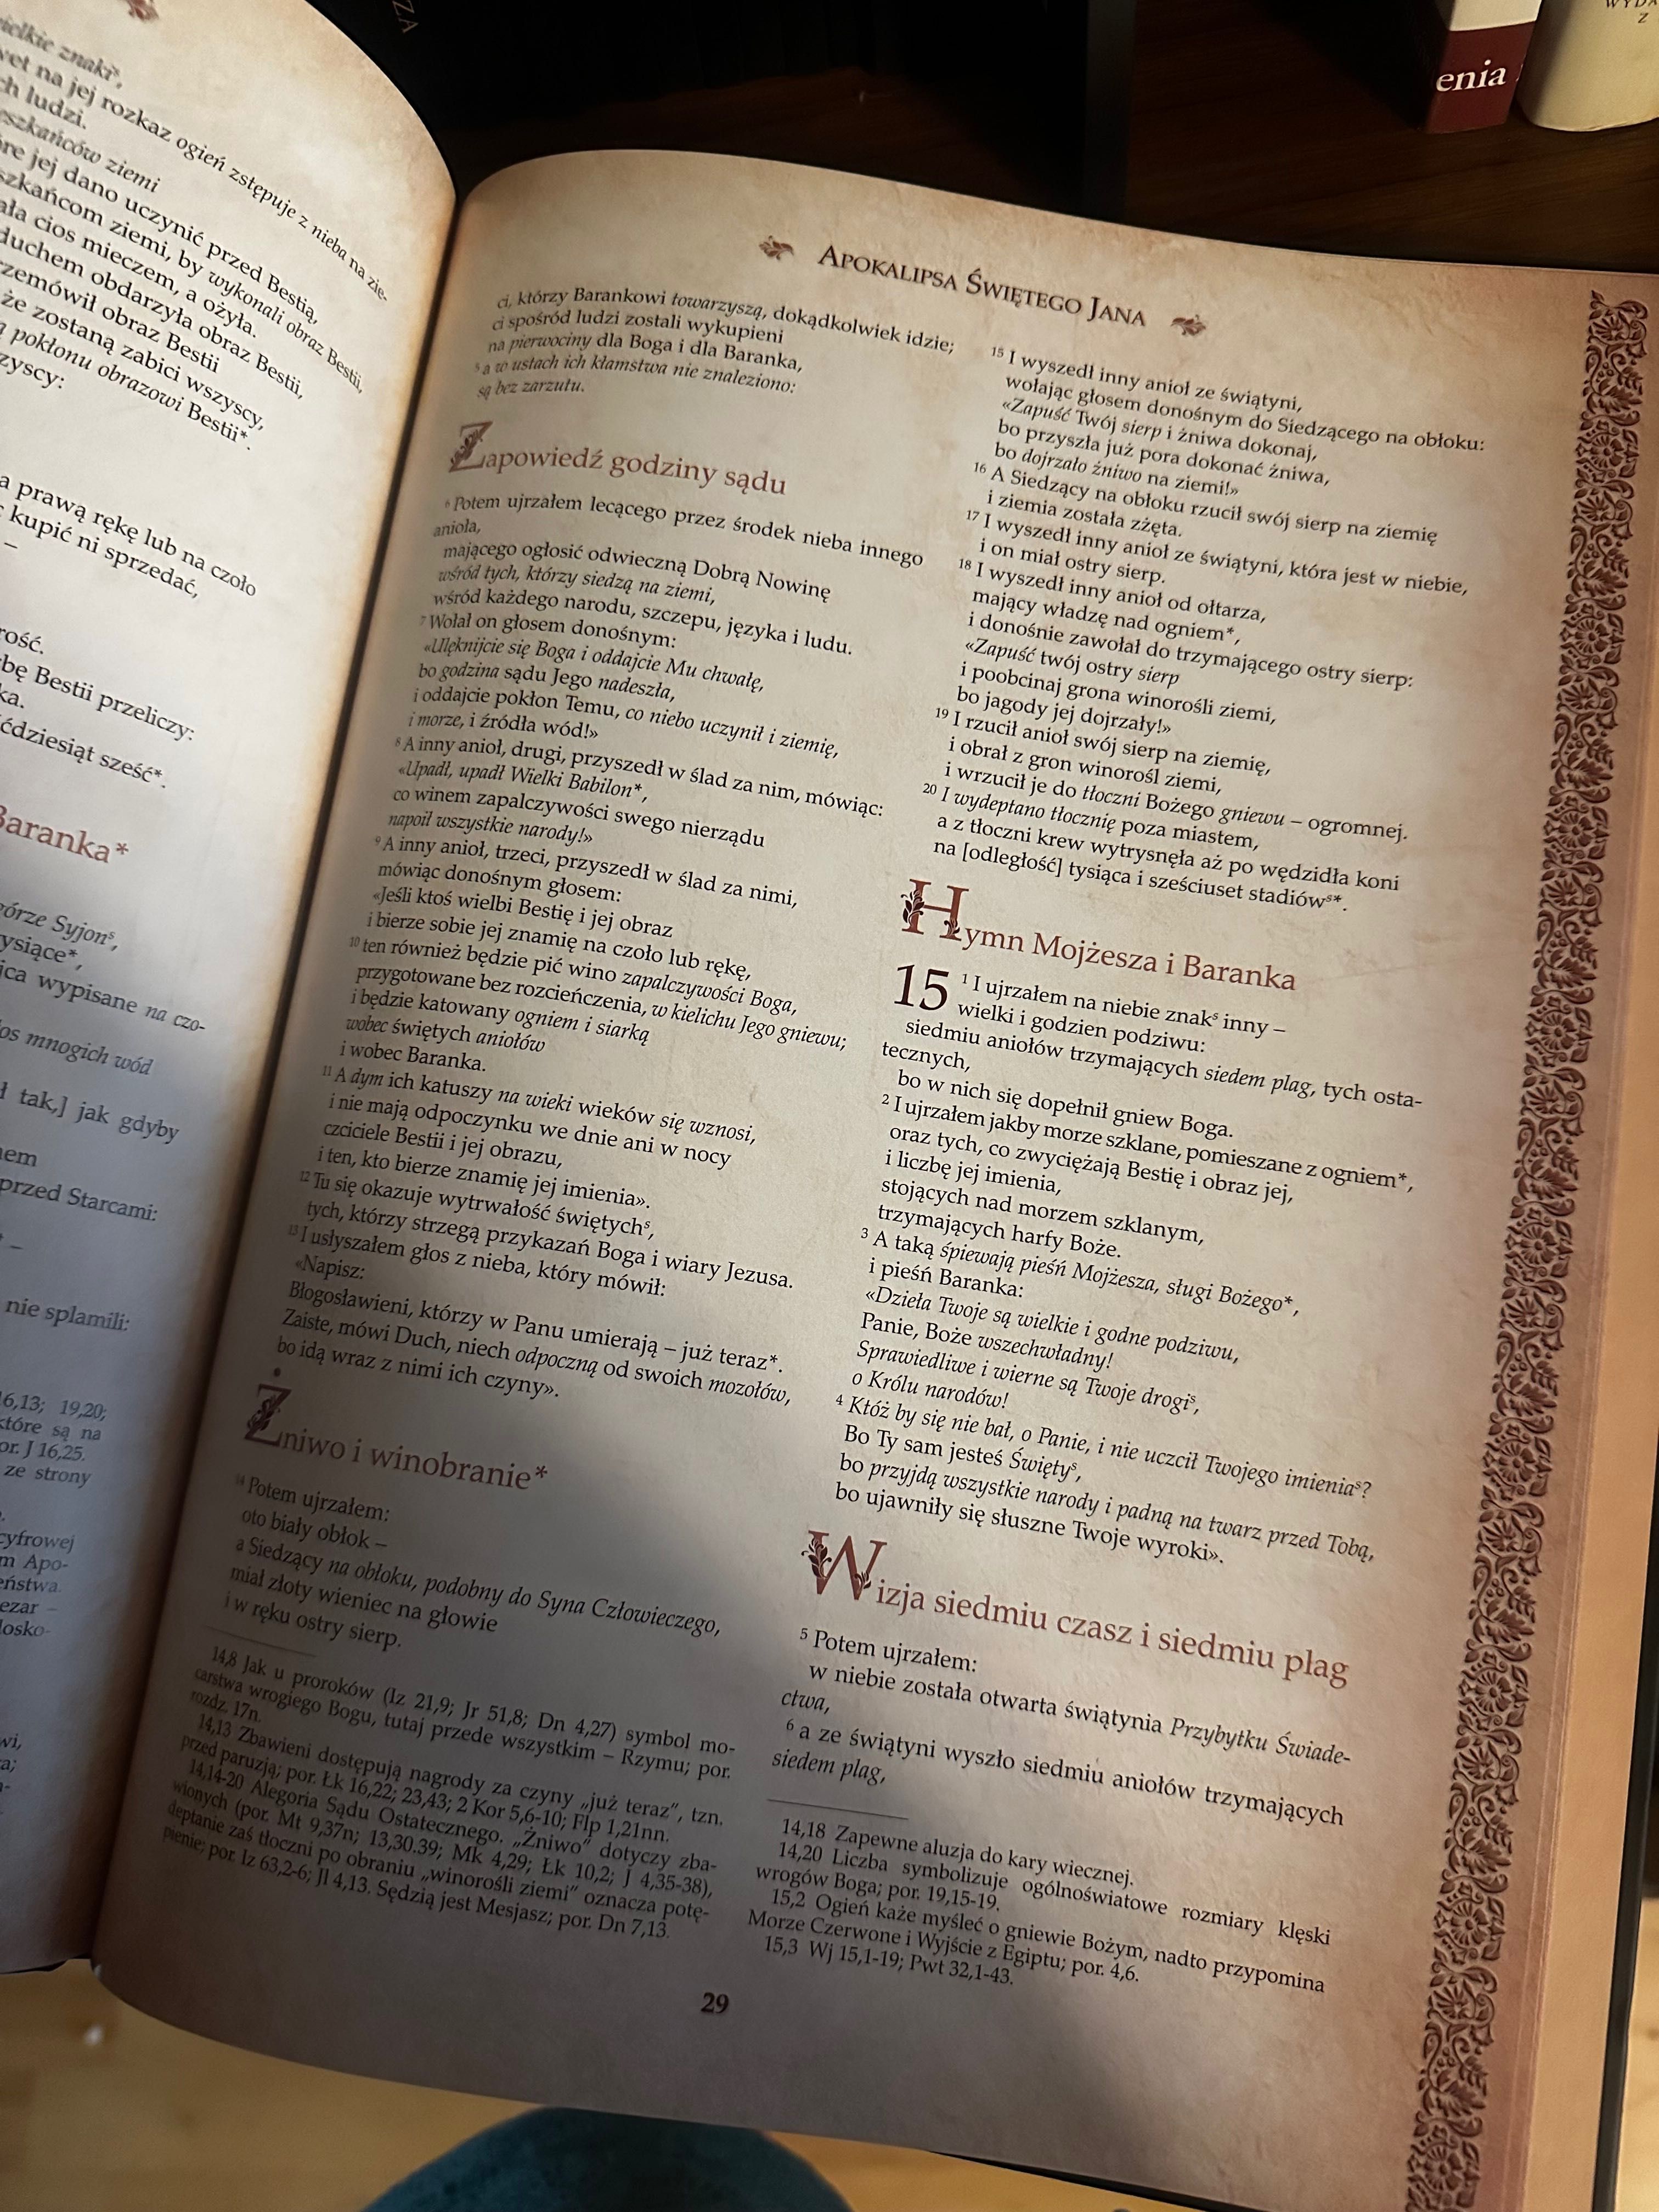 Biblia tysiąclecia ilustrowana zbiorami muzeów watykańskich tom 1-50